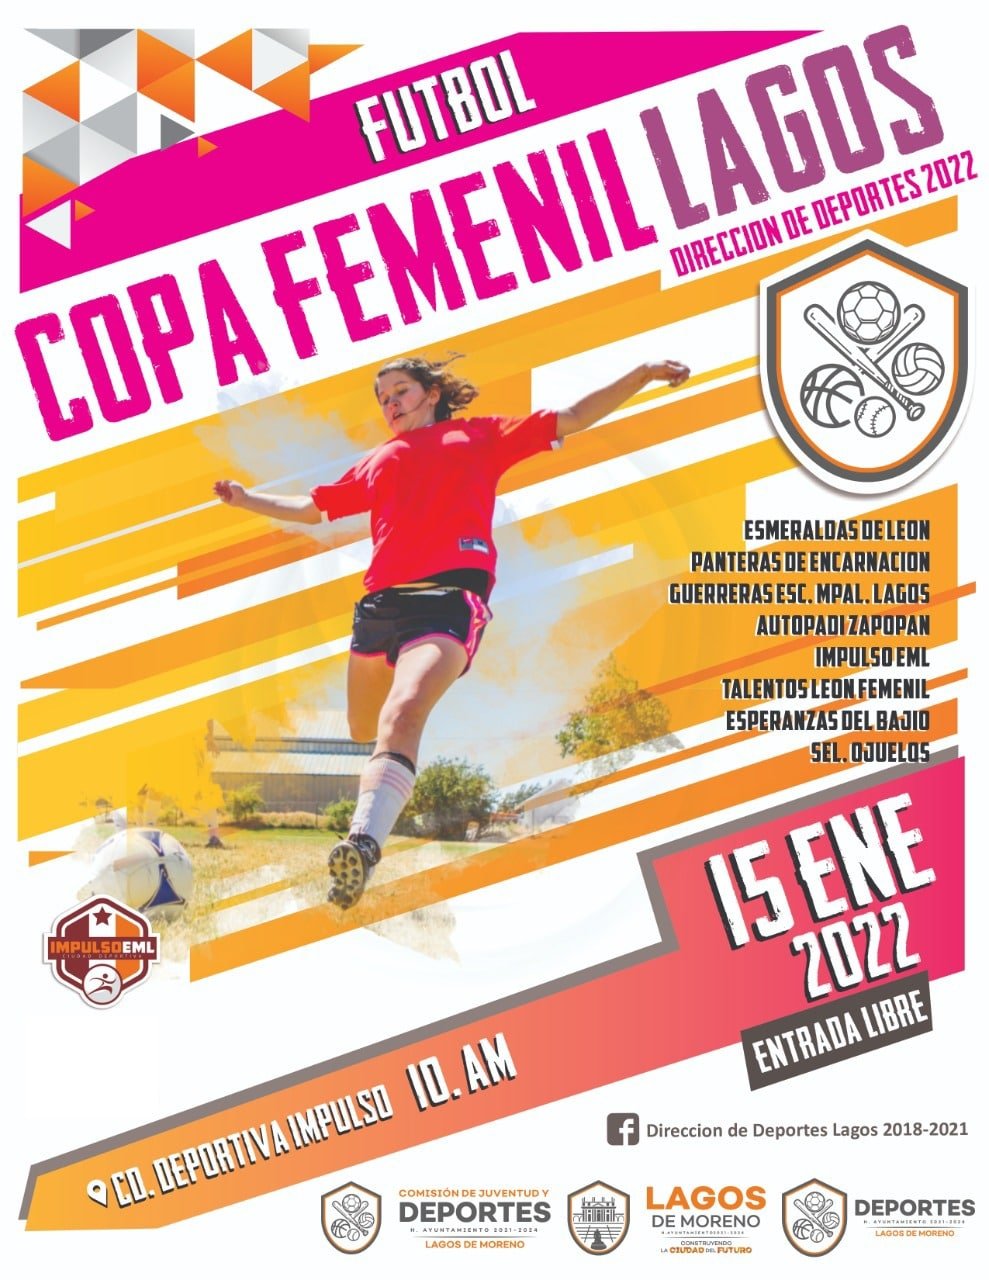 Mañana inicia el primer torneo de fútbol femenil del año “Copa Femenil Lagos”